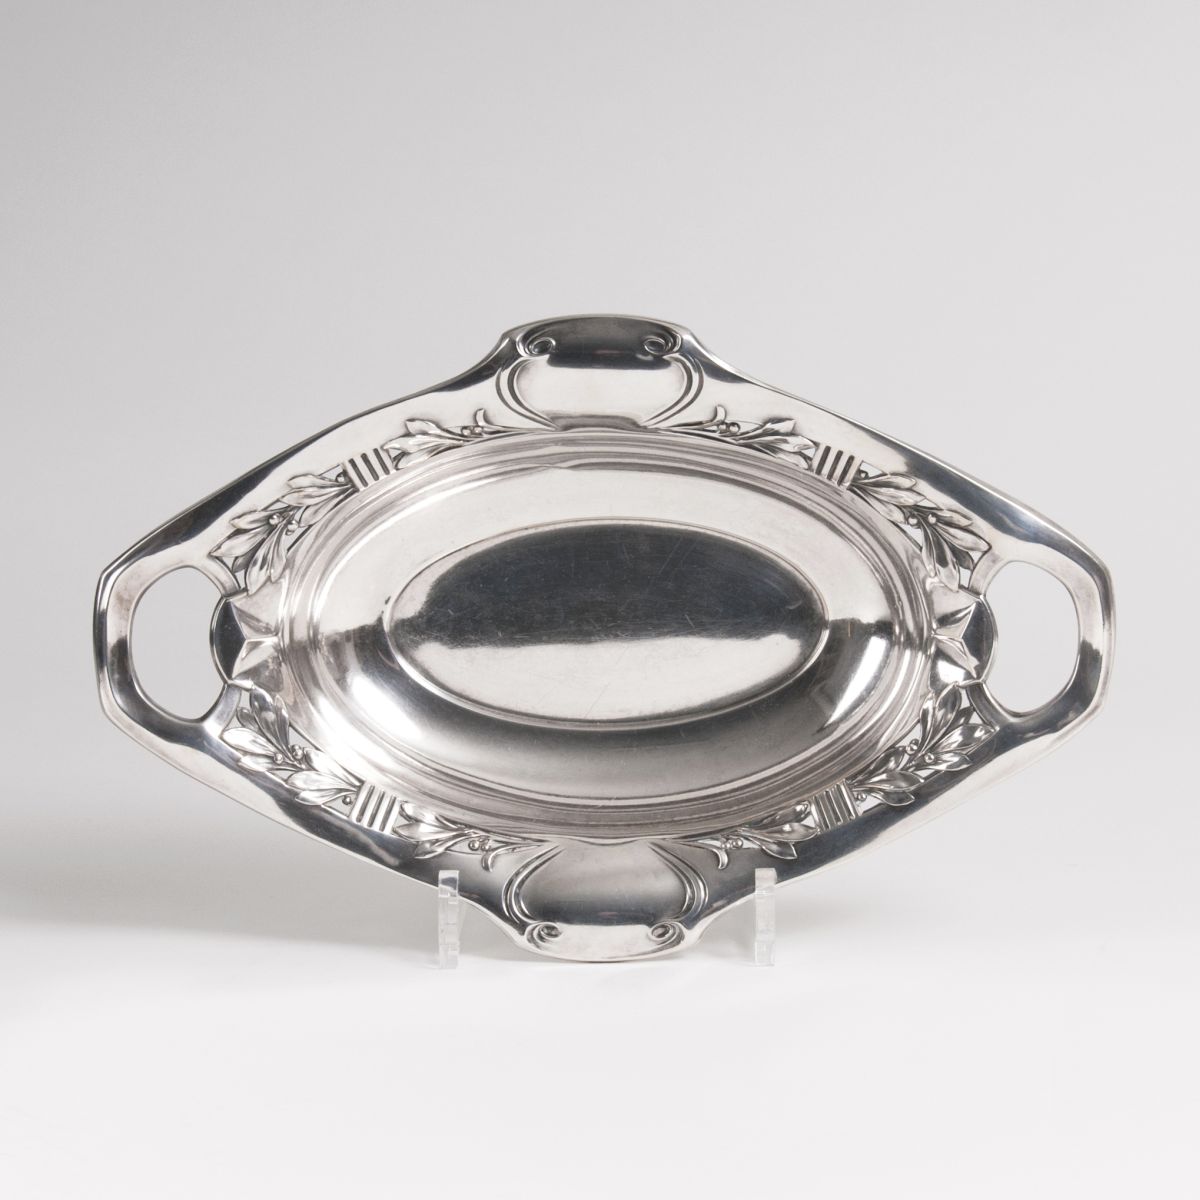 An Art Nouveau bowl